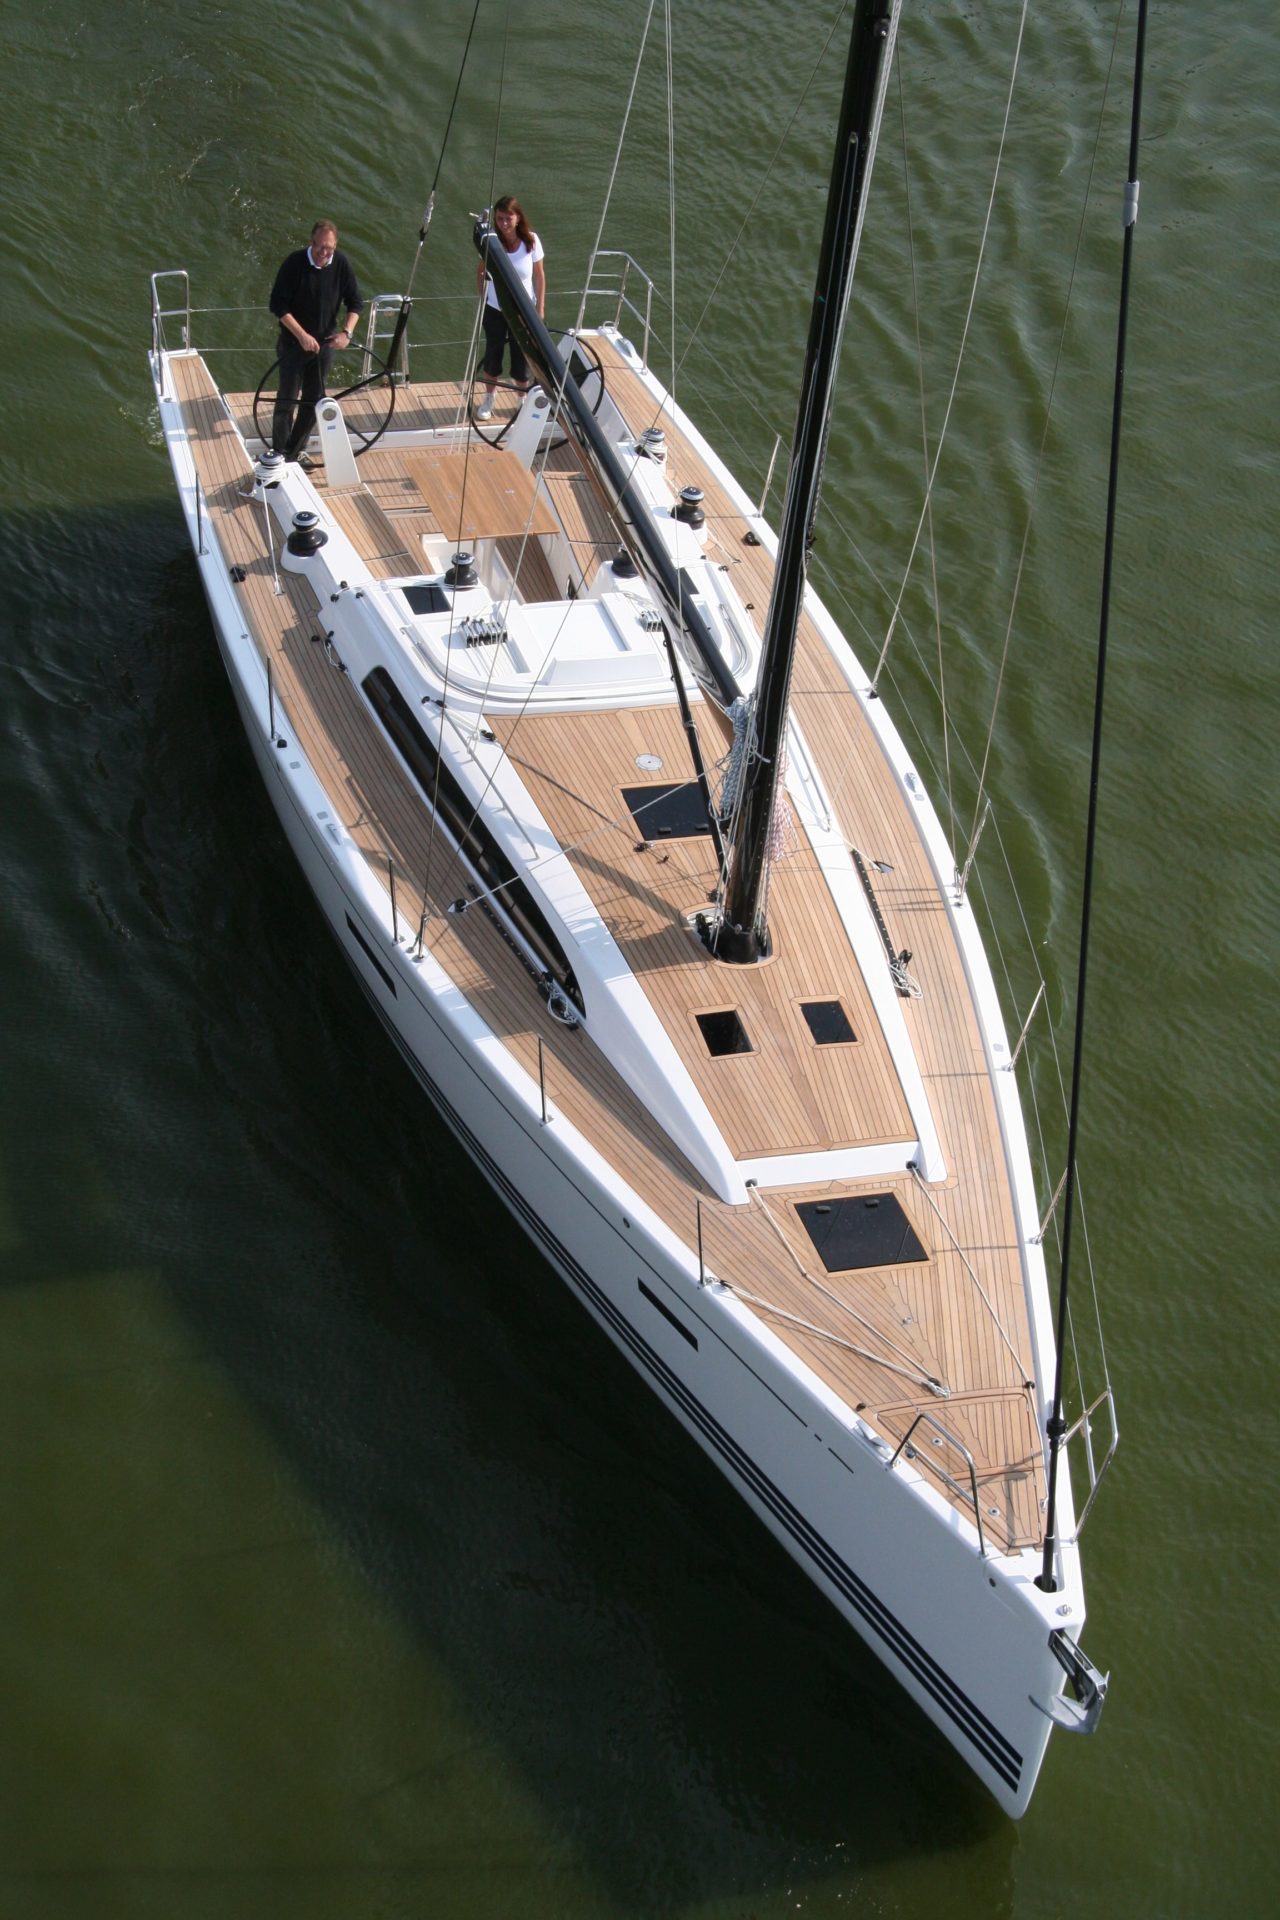 xp 44 yacht